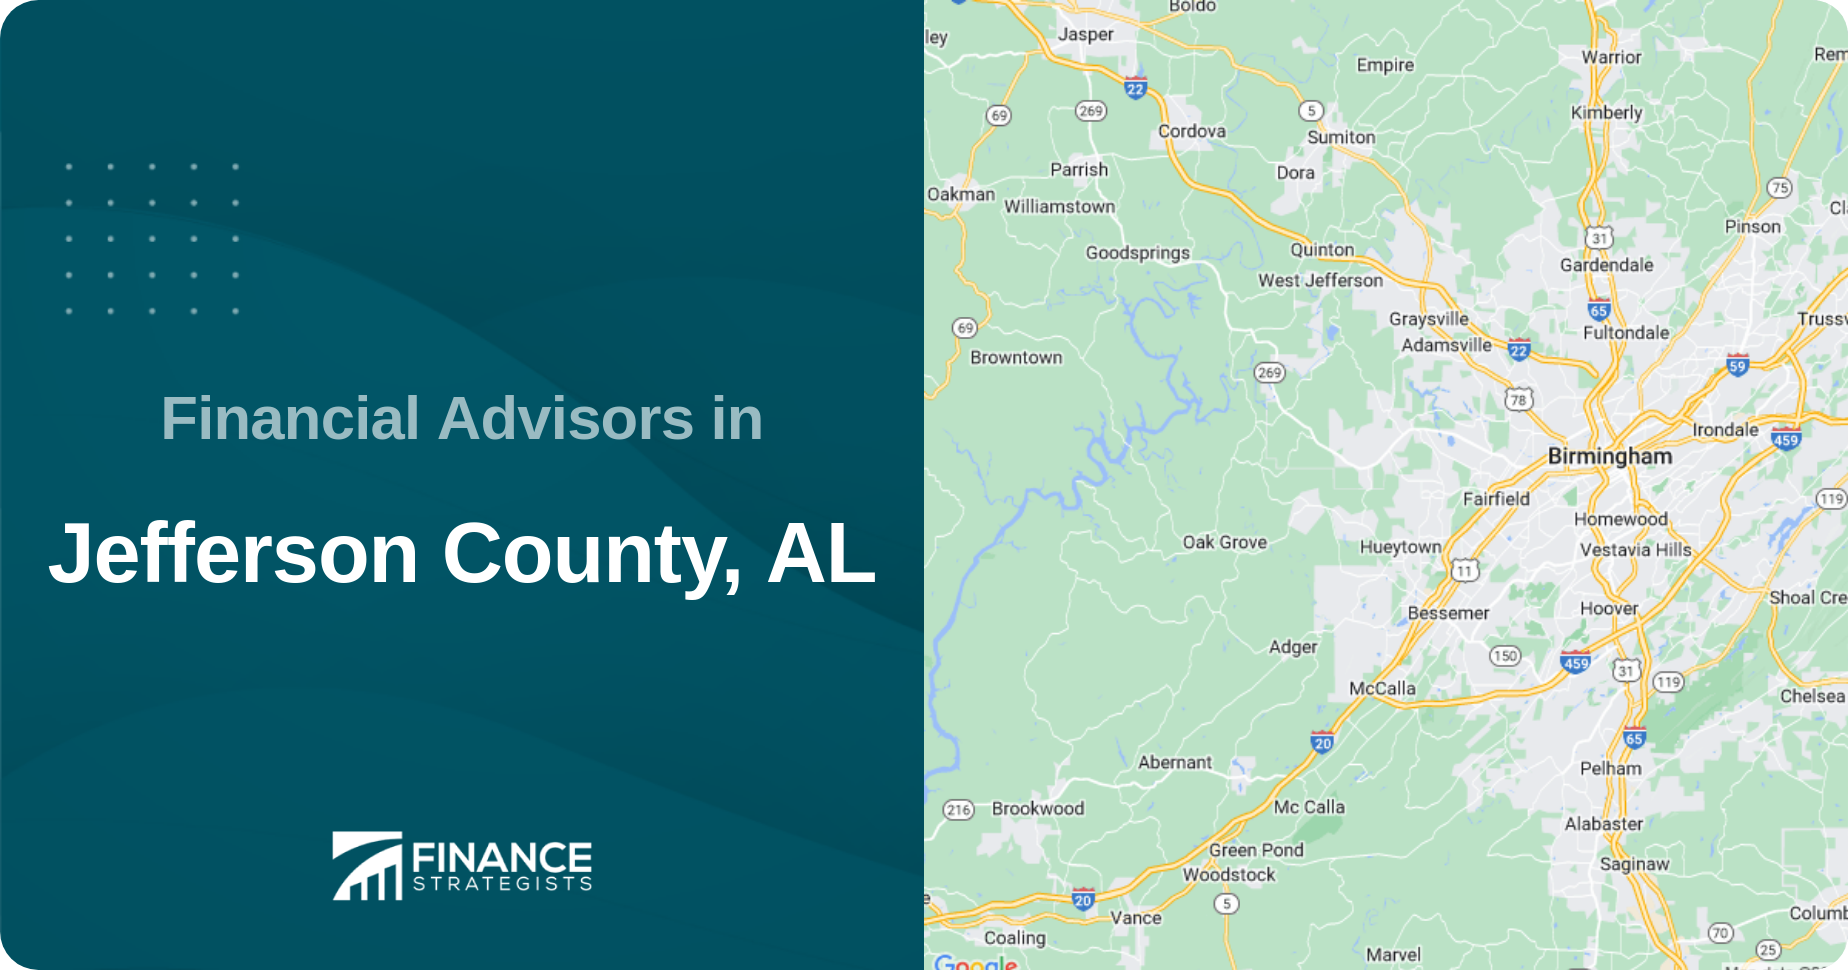 Financial Advisors in Jefferson County, AL